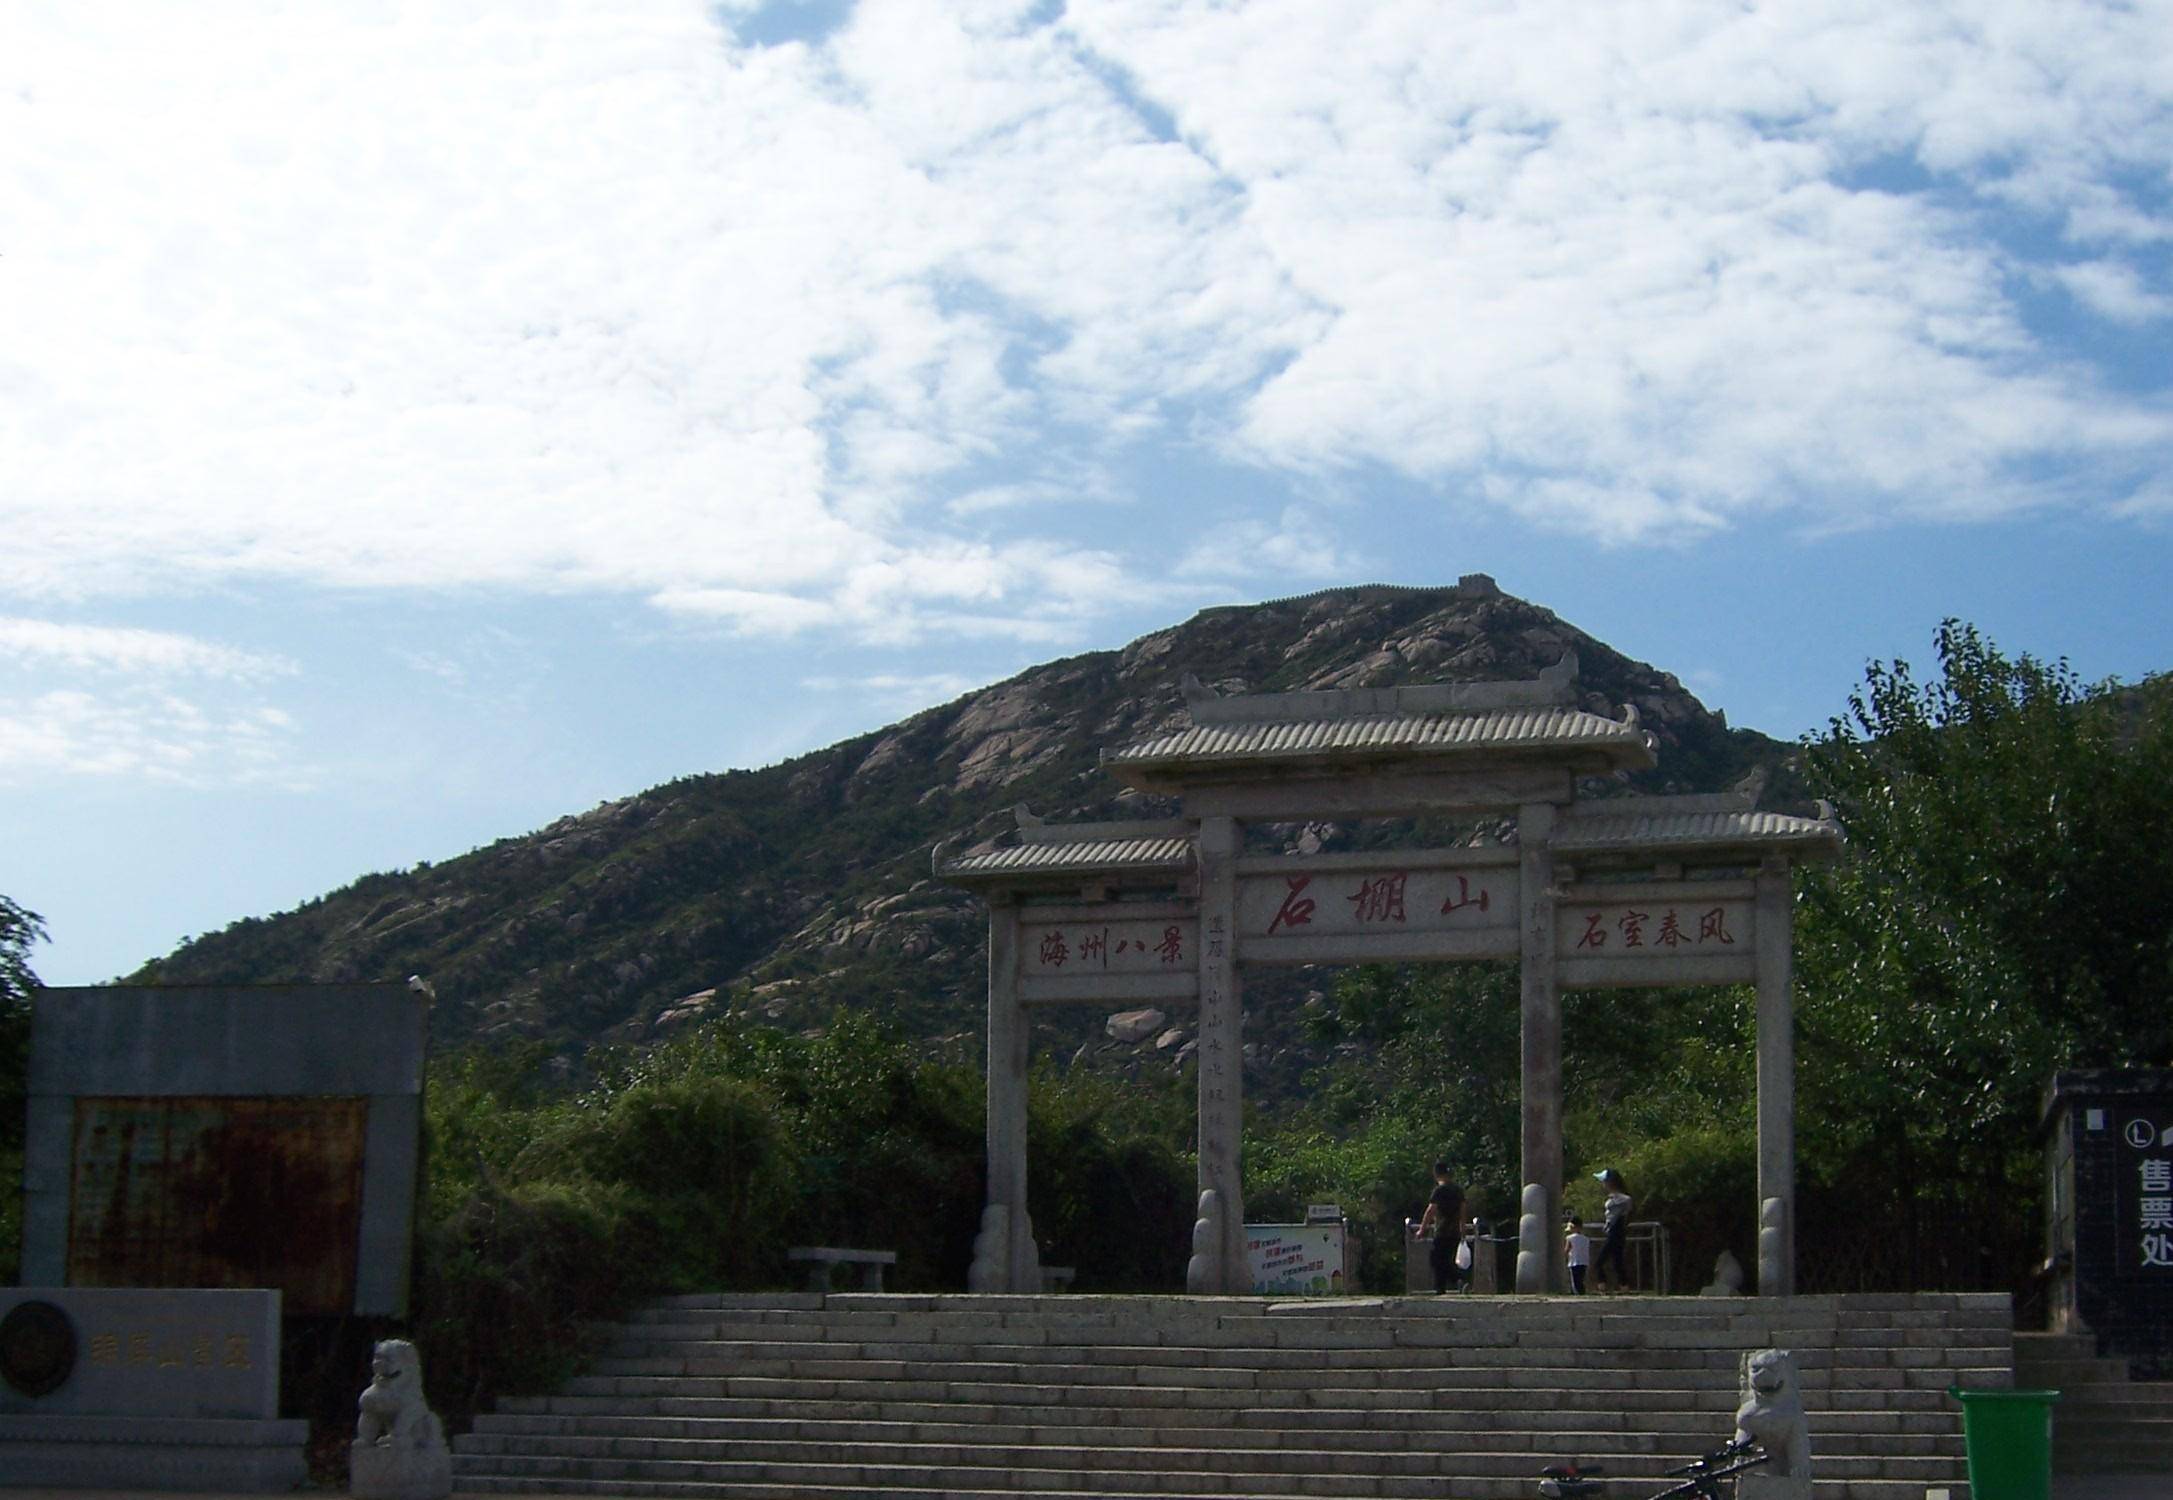 连云港石棚山景区,刘备兵败徐州后的流落地,有很多古迹